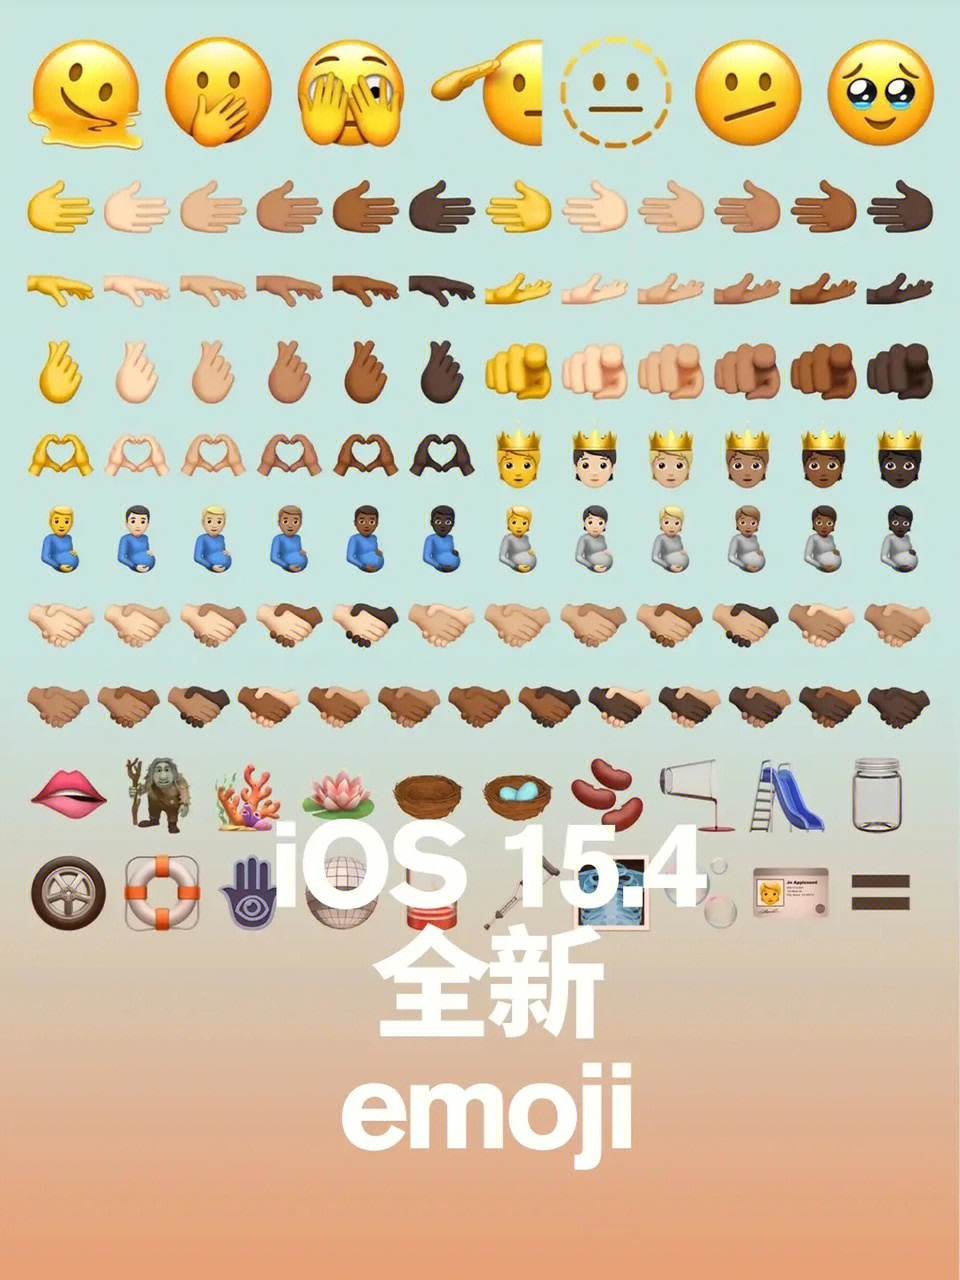 搜狗emoji表情含义图片